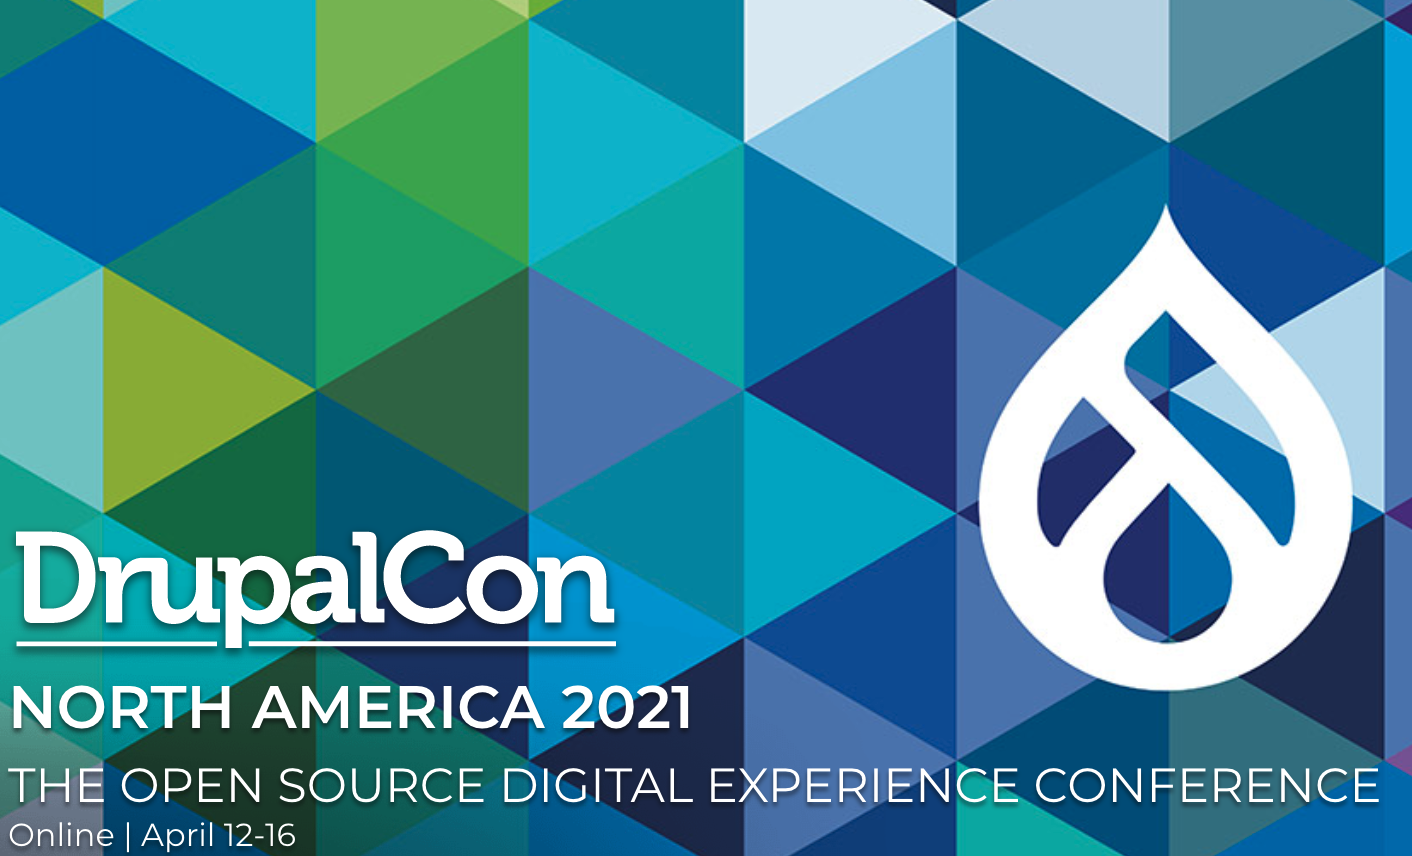 Drupalcon North America 2021 logo